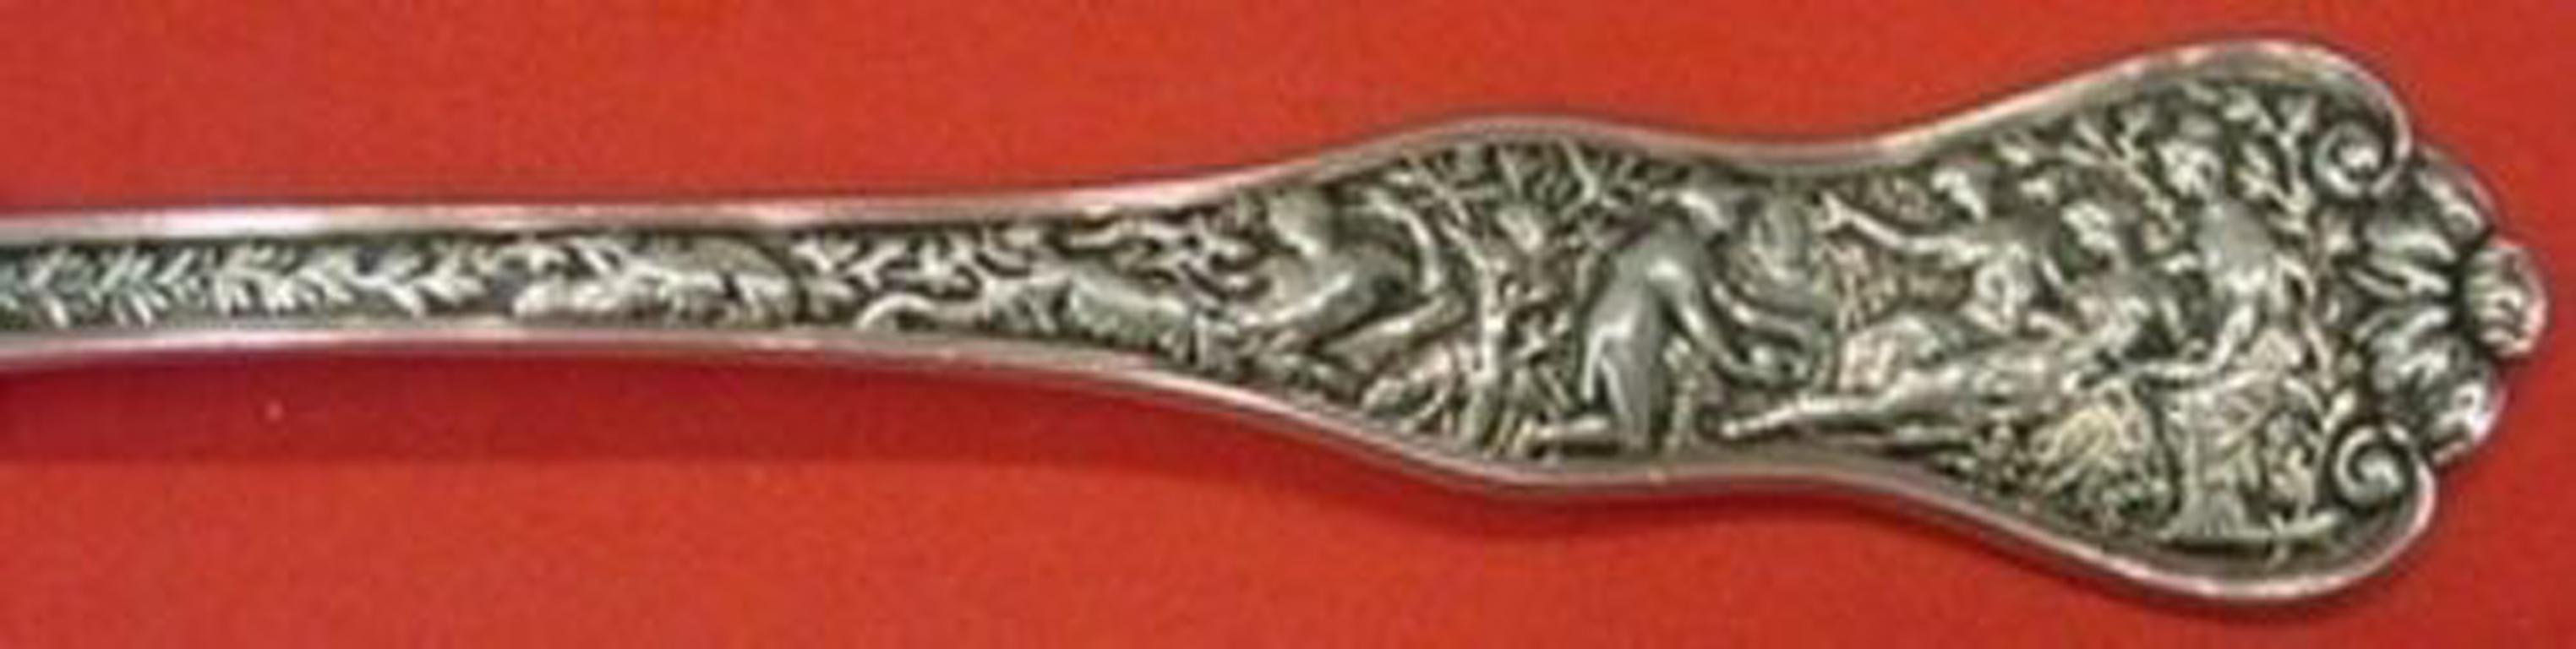 Sterling silver regular fork, 4-tine 7